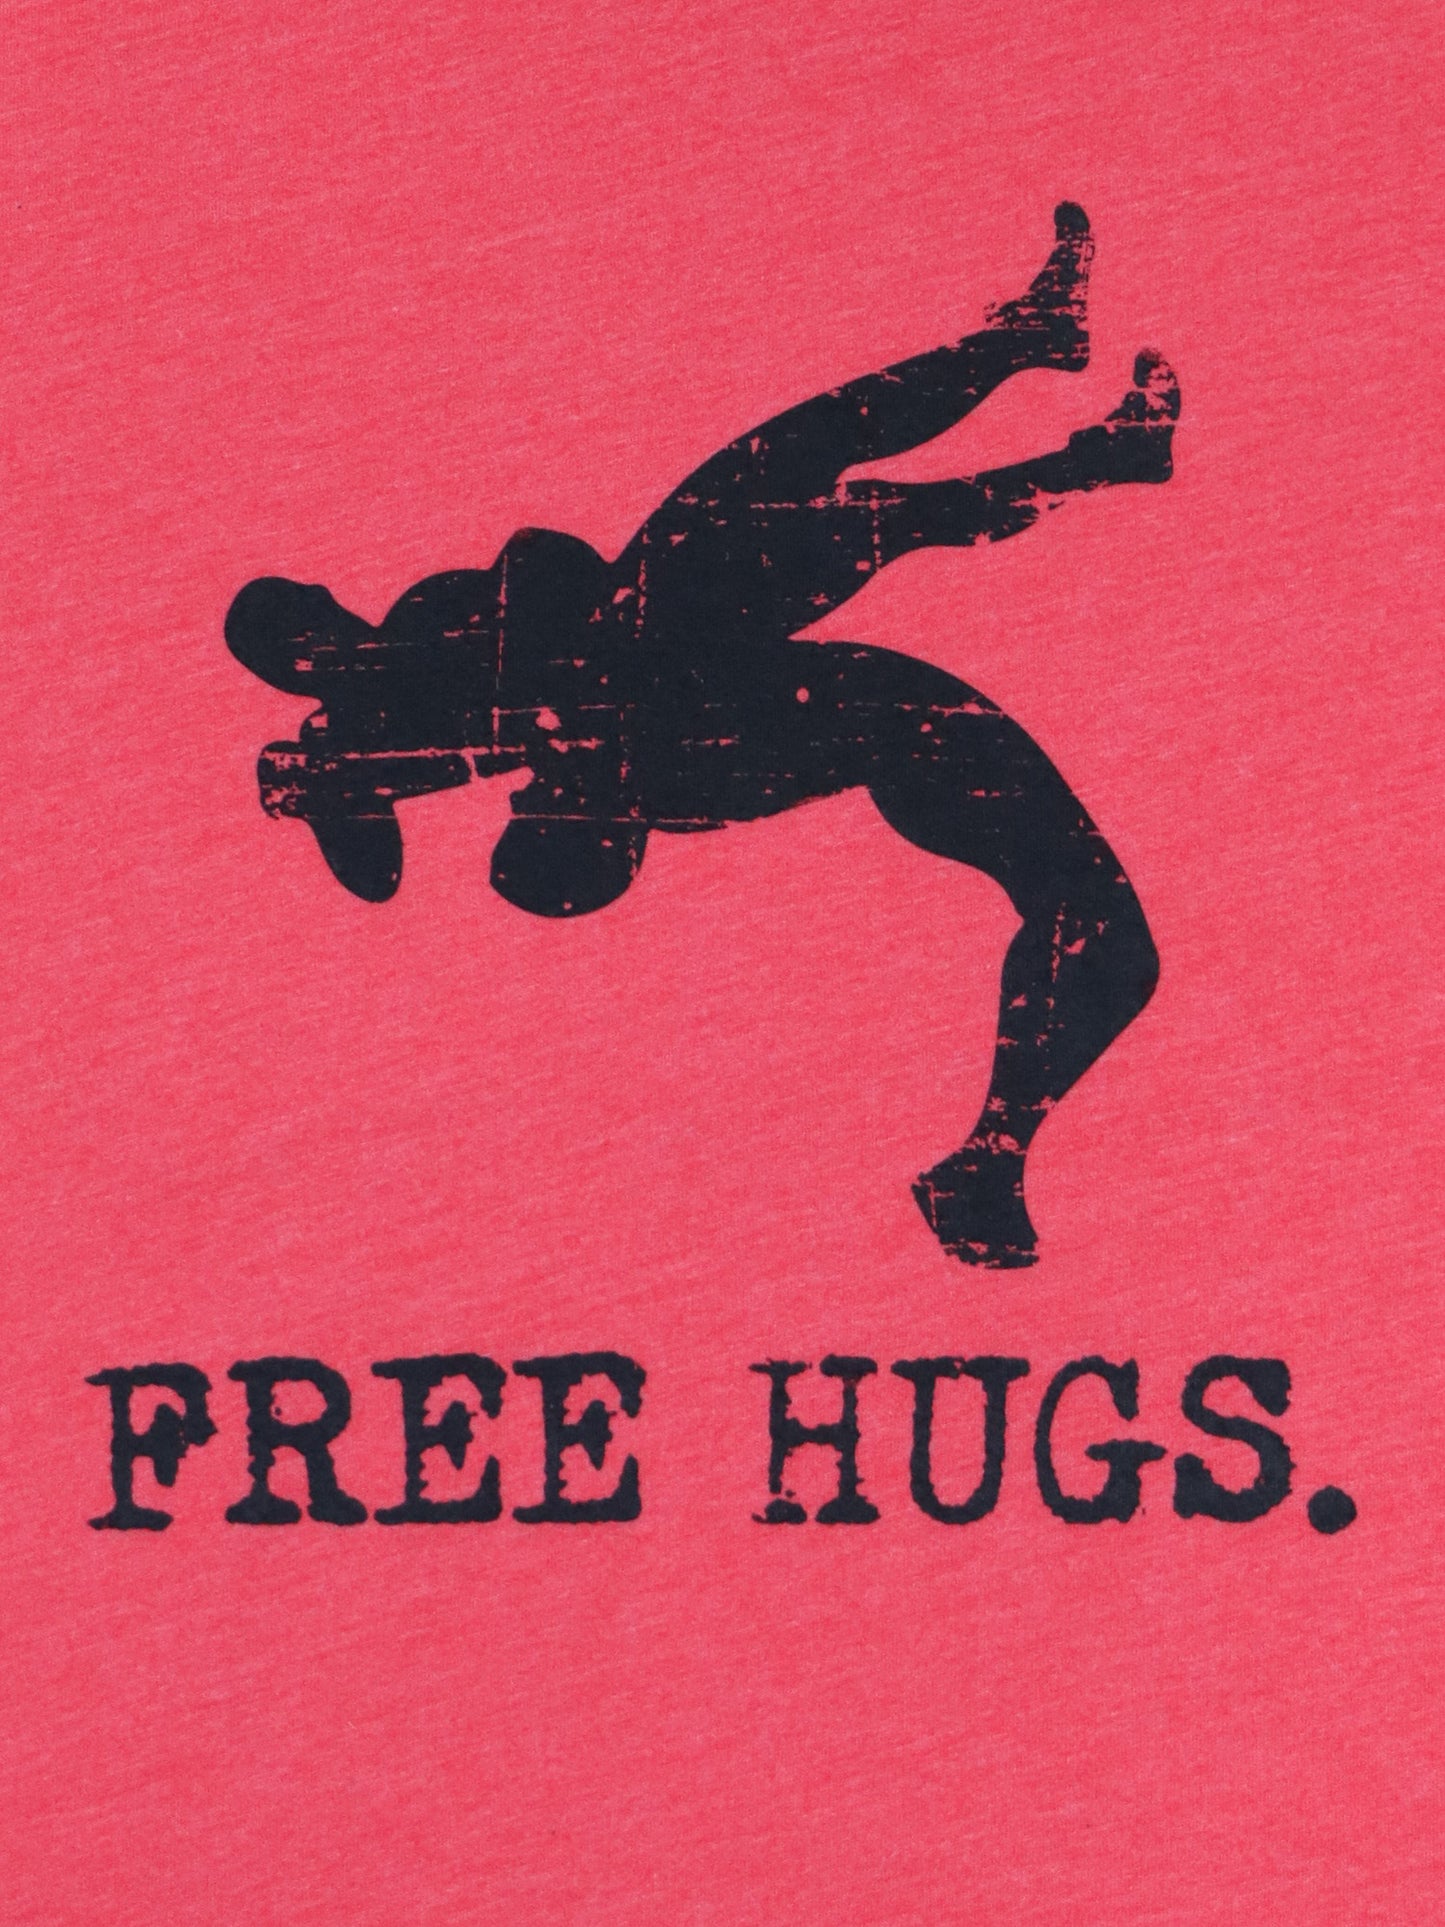 Wrestling- Free Hugs Tee- Red